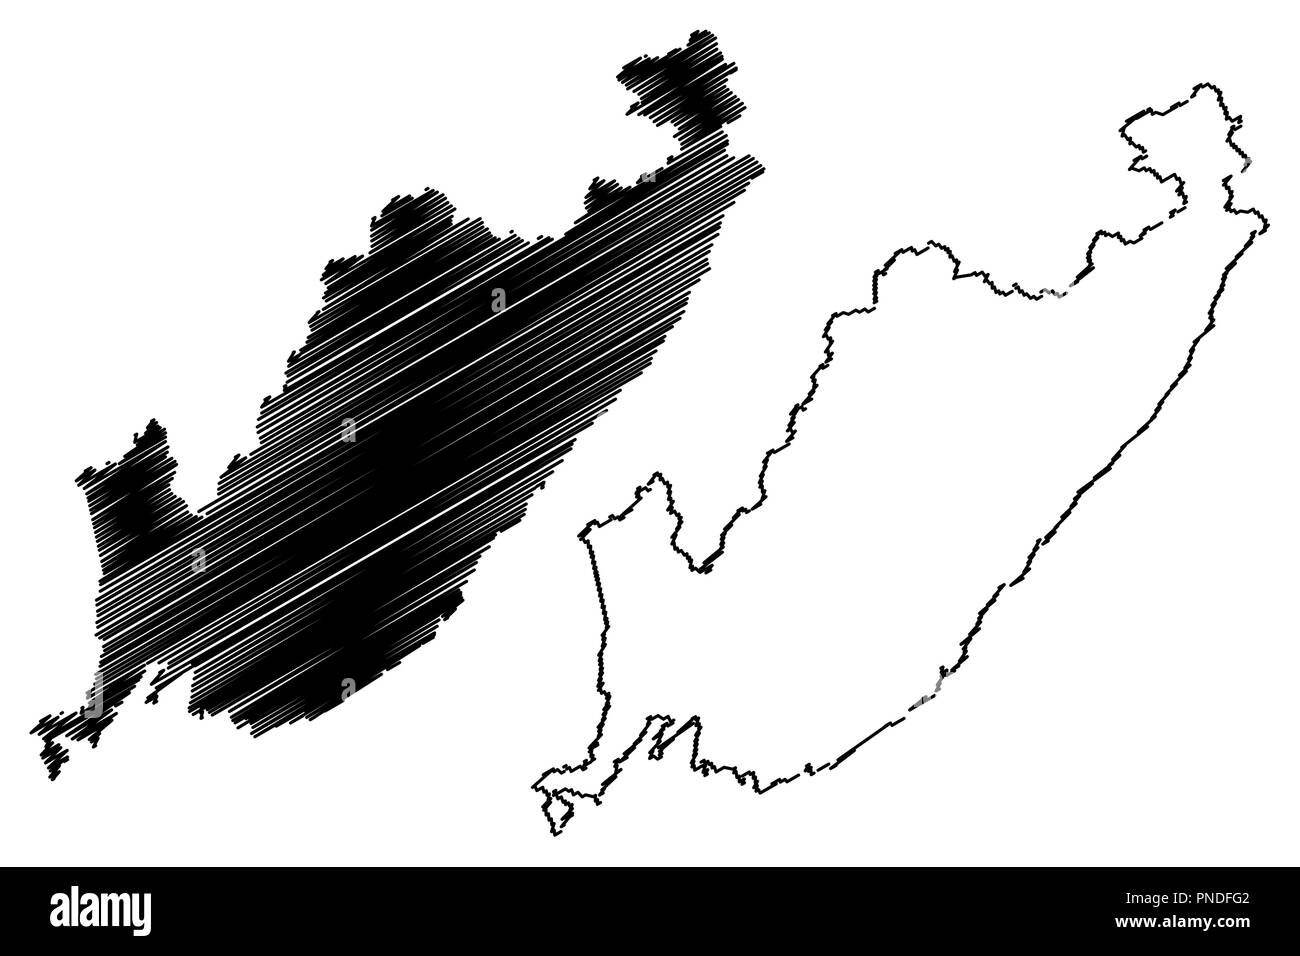 Flandre orientale (Russie, Sujets de la Fédération de Russie, de la Russie) carte Krais illustration vectorielle, scribble croquis Territoire maritime (Primorye) ma Illustration de Vecteur